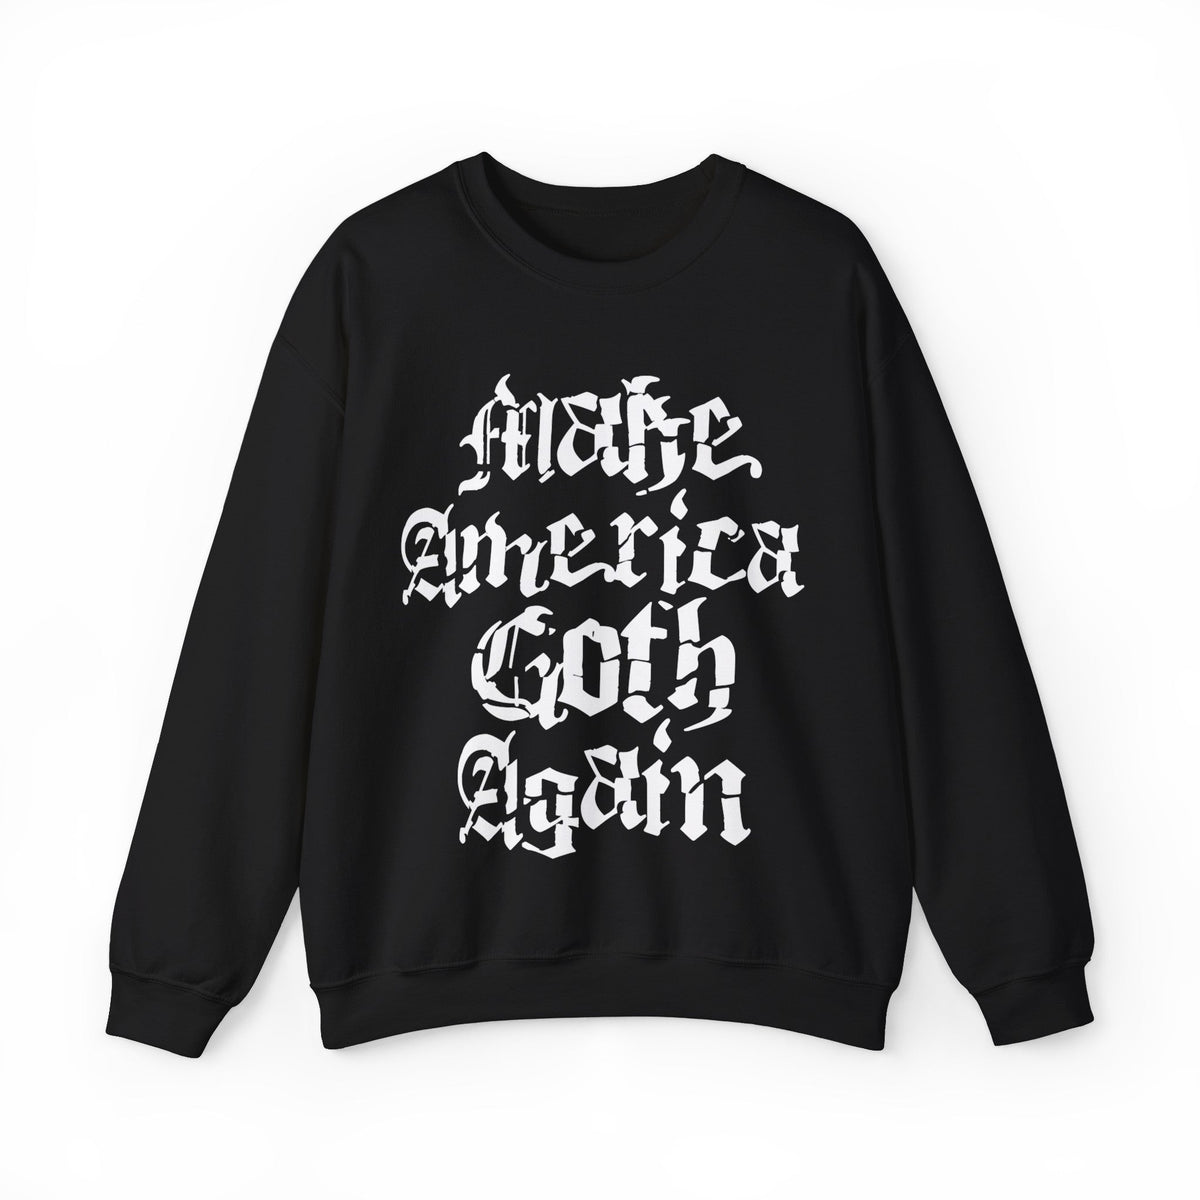 Make America Goth Again Crewneck Sweatshirt - Goth Cloth Co.Sweatshirt10910128729467639066